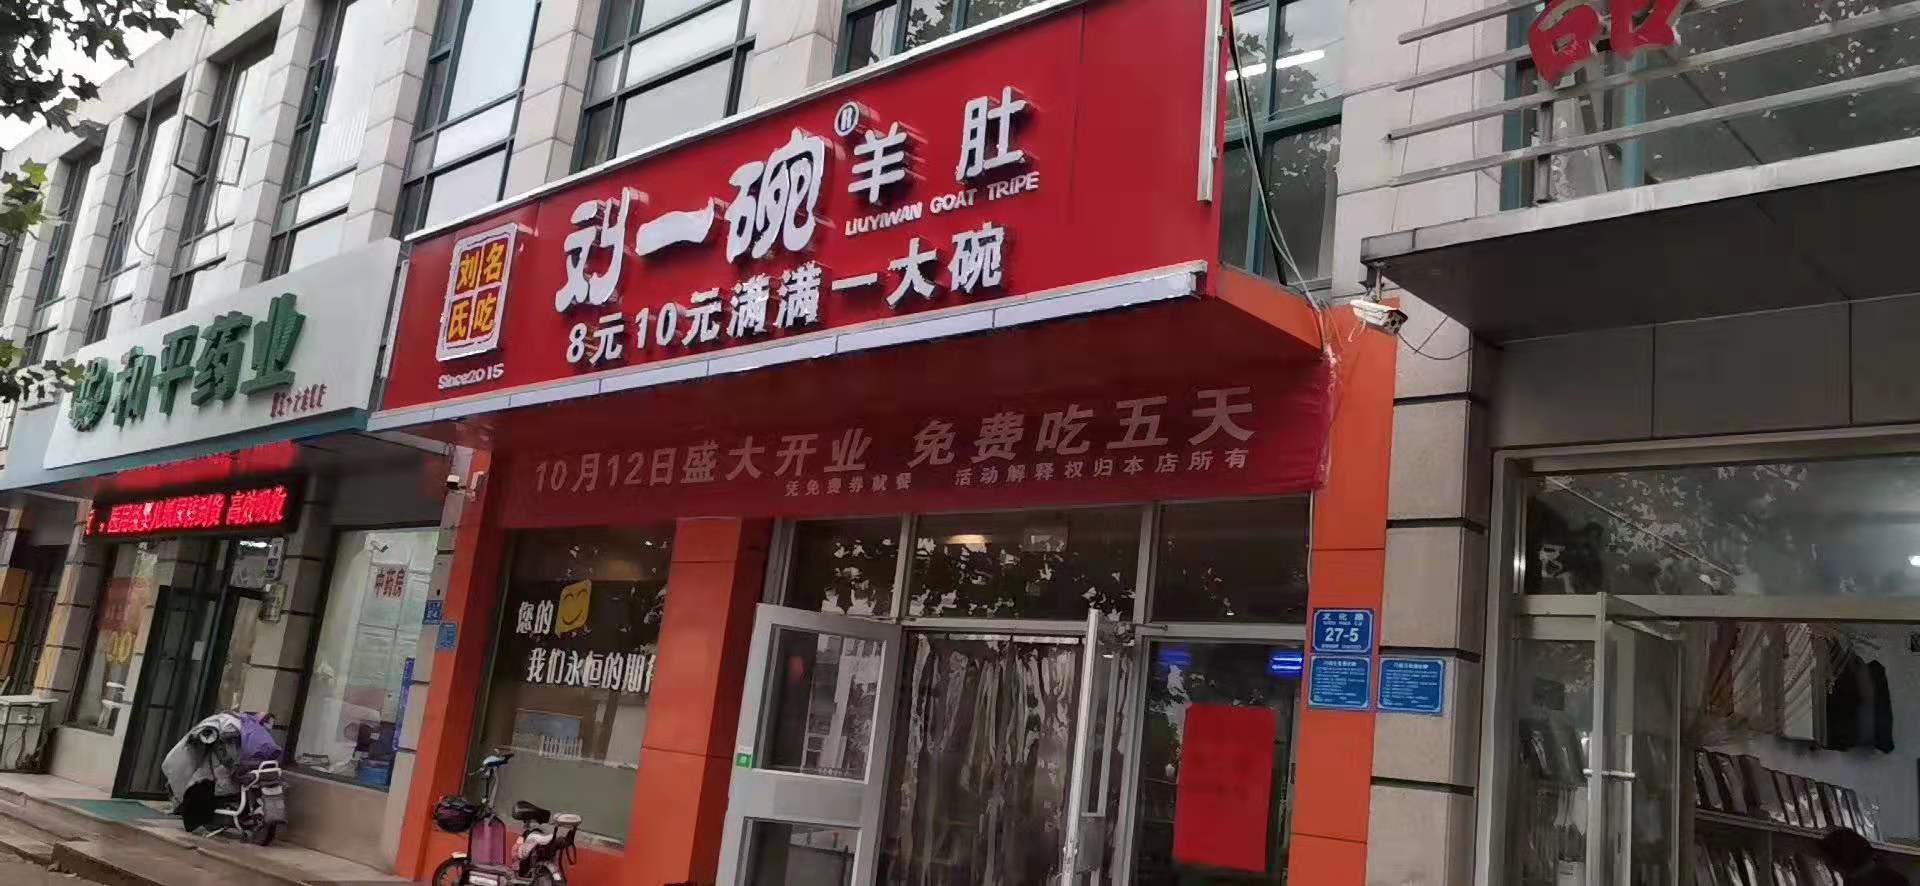 山东刘一碗诸城店于2019年10月12日盛大开业，祝生意兴隆